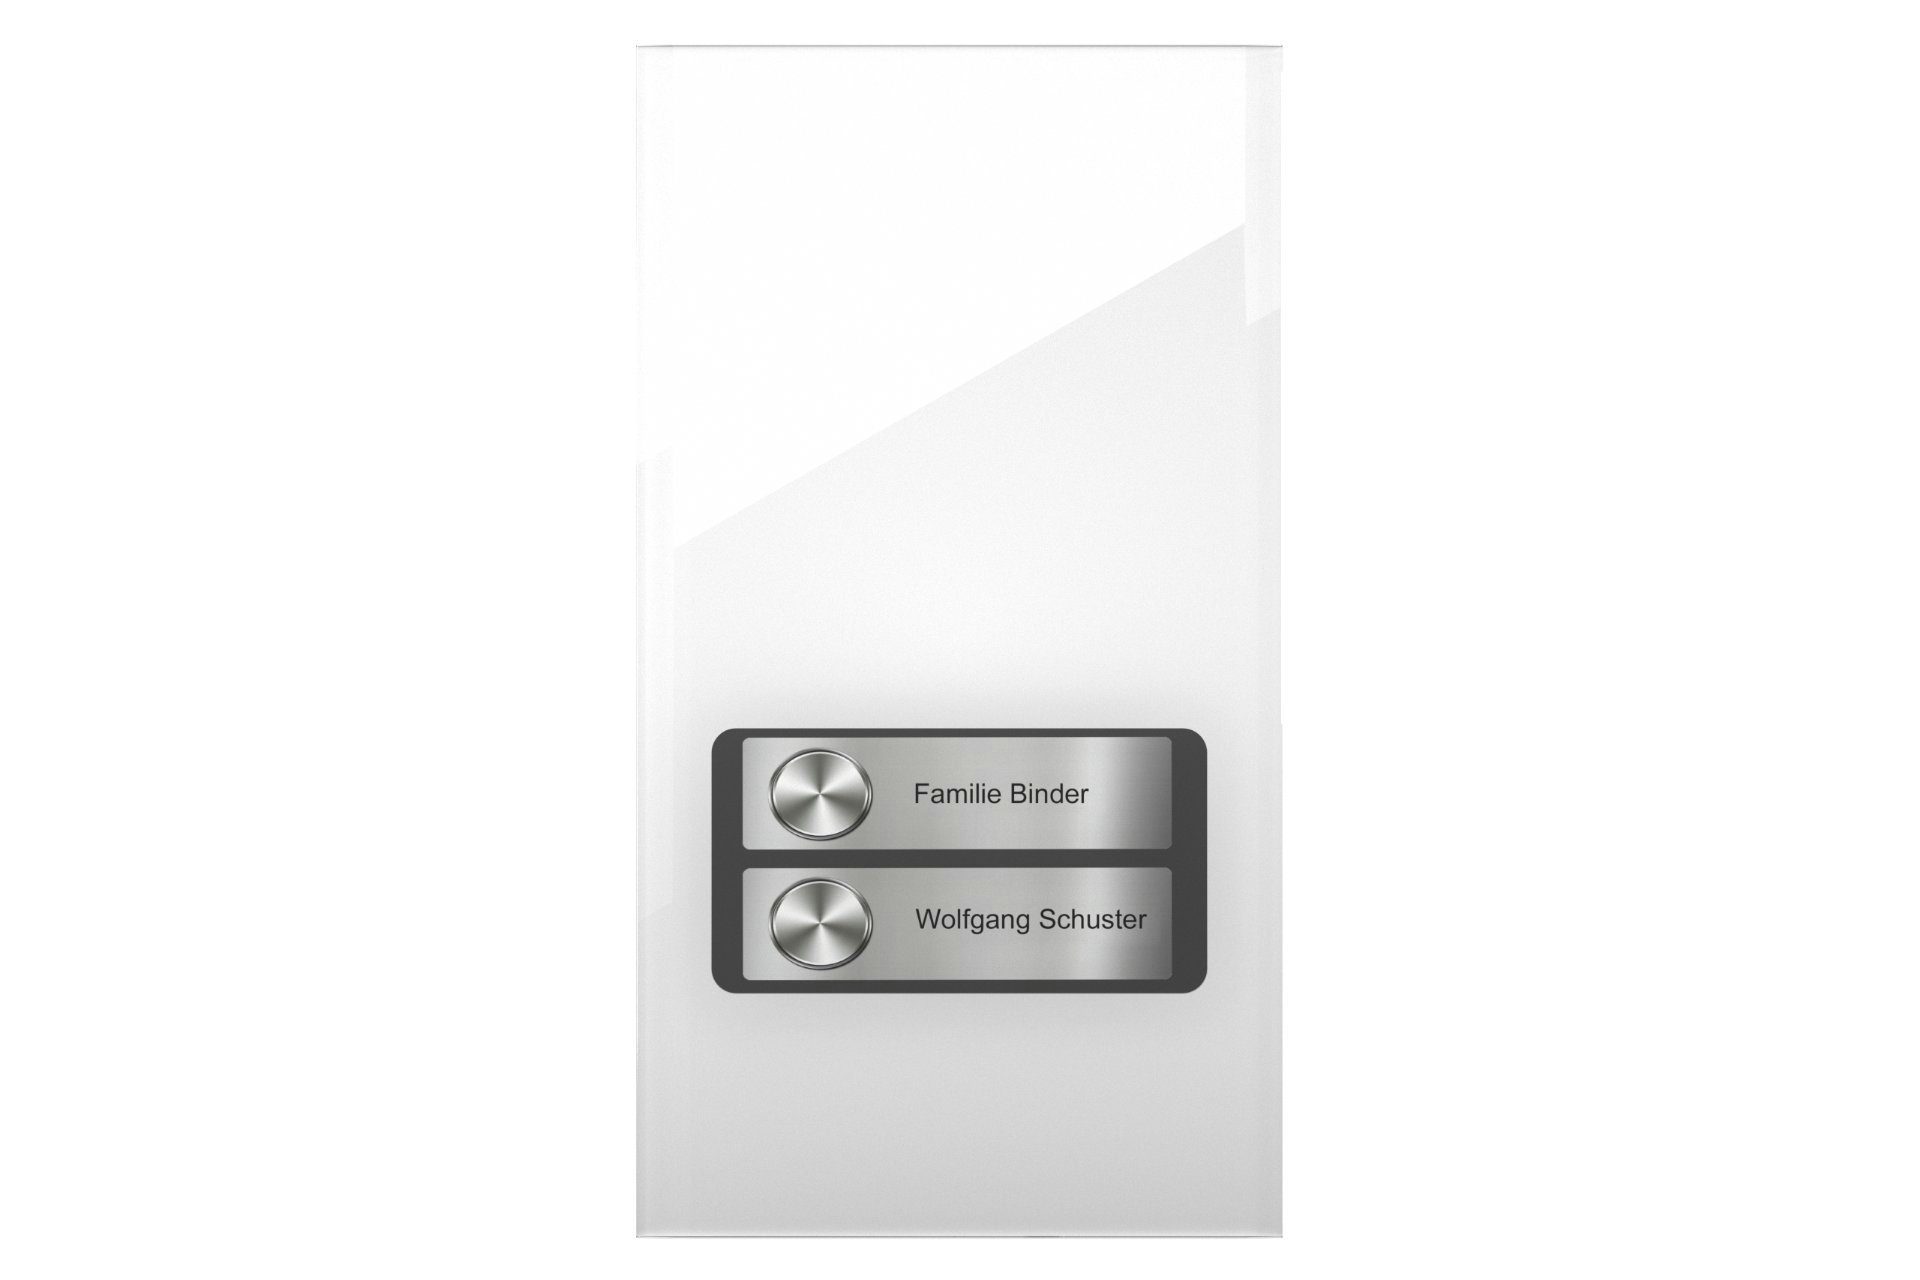 DoorLine Pro Exclusive Smart Home Türklingel (direkt auf´s Telefon, wahlweise 1-4 Klingeltaster an jeweils 2 Rufnummern, Zutrittskontrolle über PIN-Code) Weiß